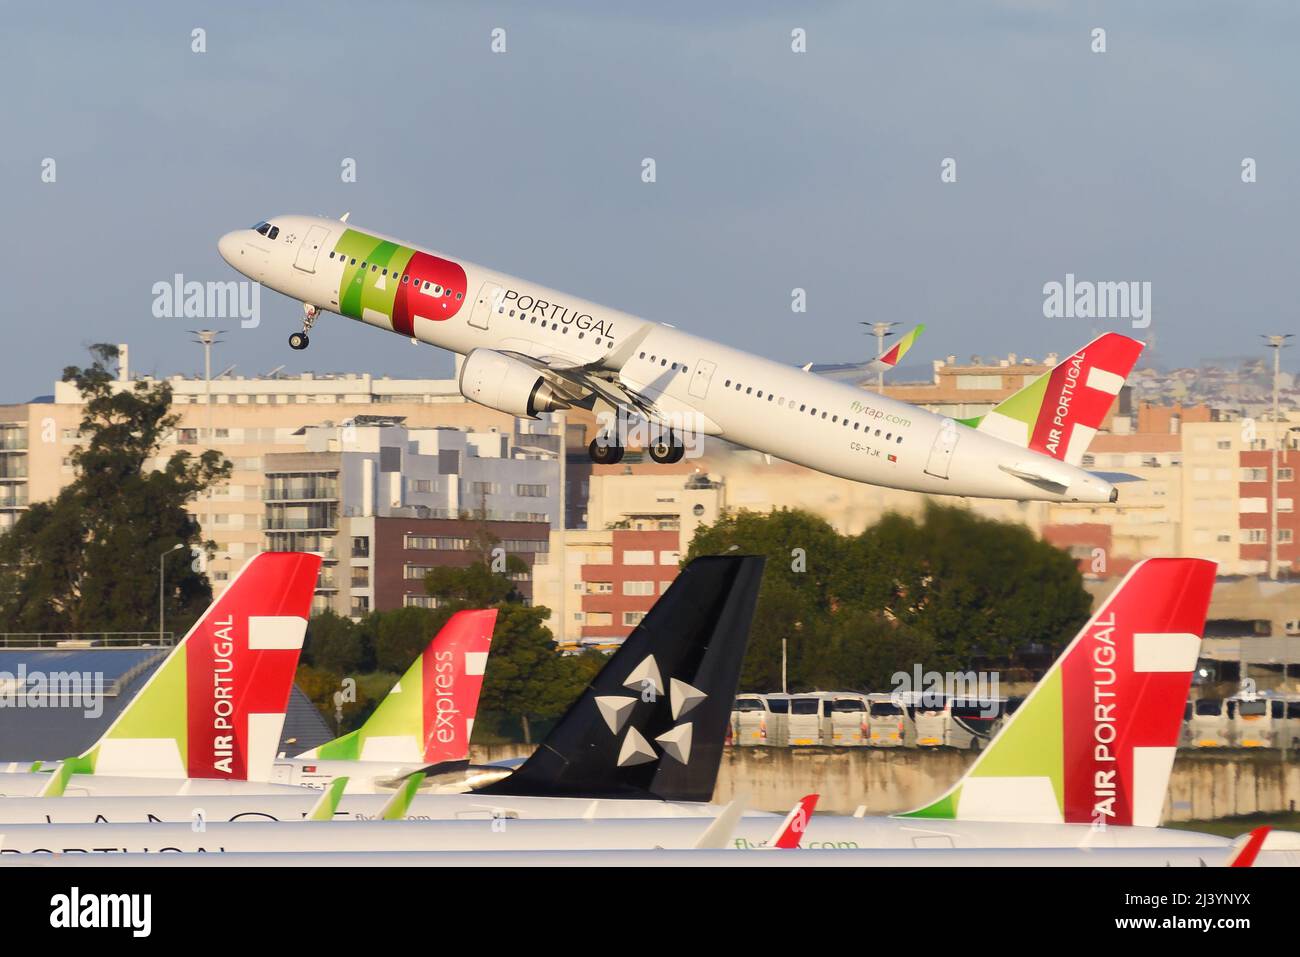 TAP Air Portugal Airbus A321-Flugzeug mit Abflug vom Flughafen Lissabon. Portugiesische Fluggesellschaft mit Drehkreuz am Flughafen Portela. TAP Portugal Airline Aicraft Tails. Stockfoto